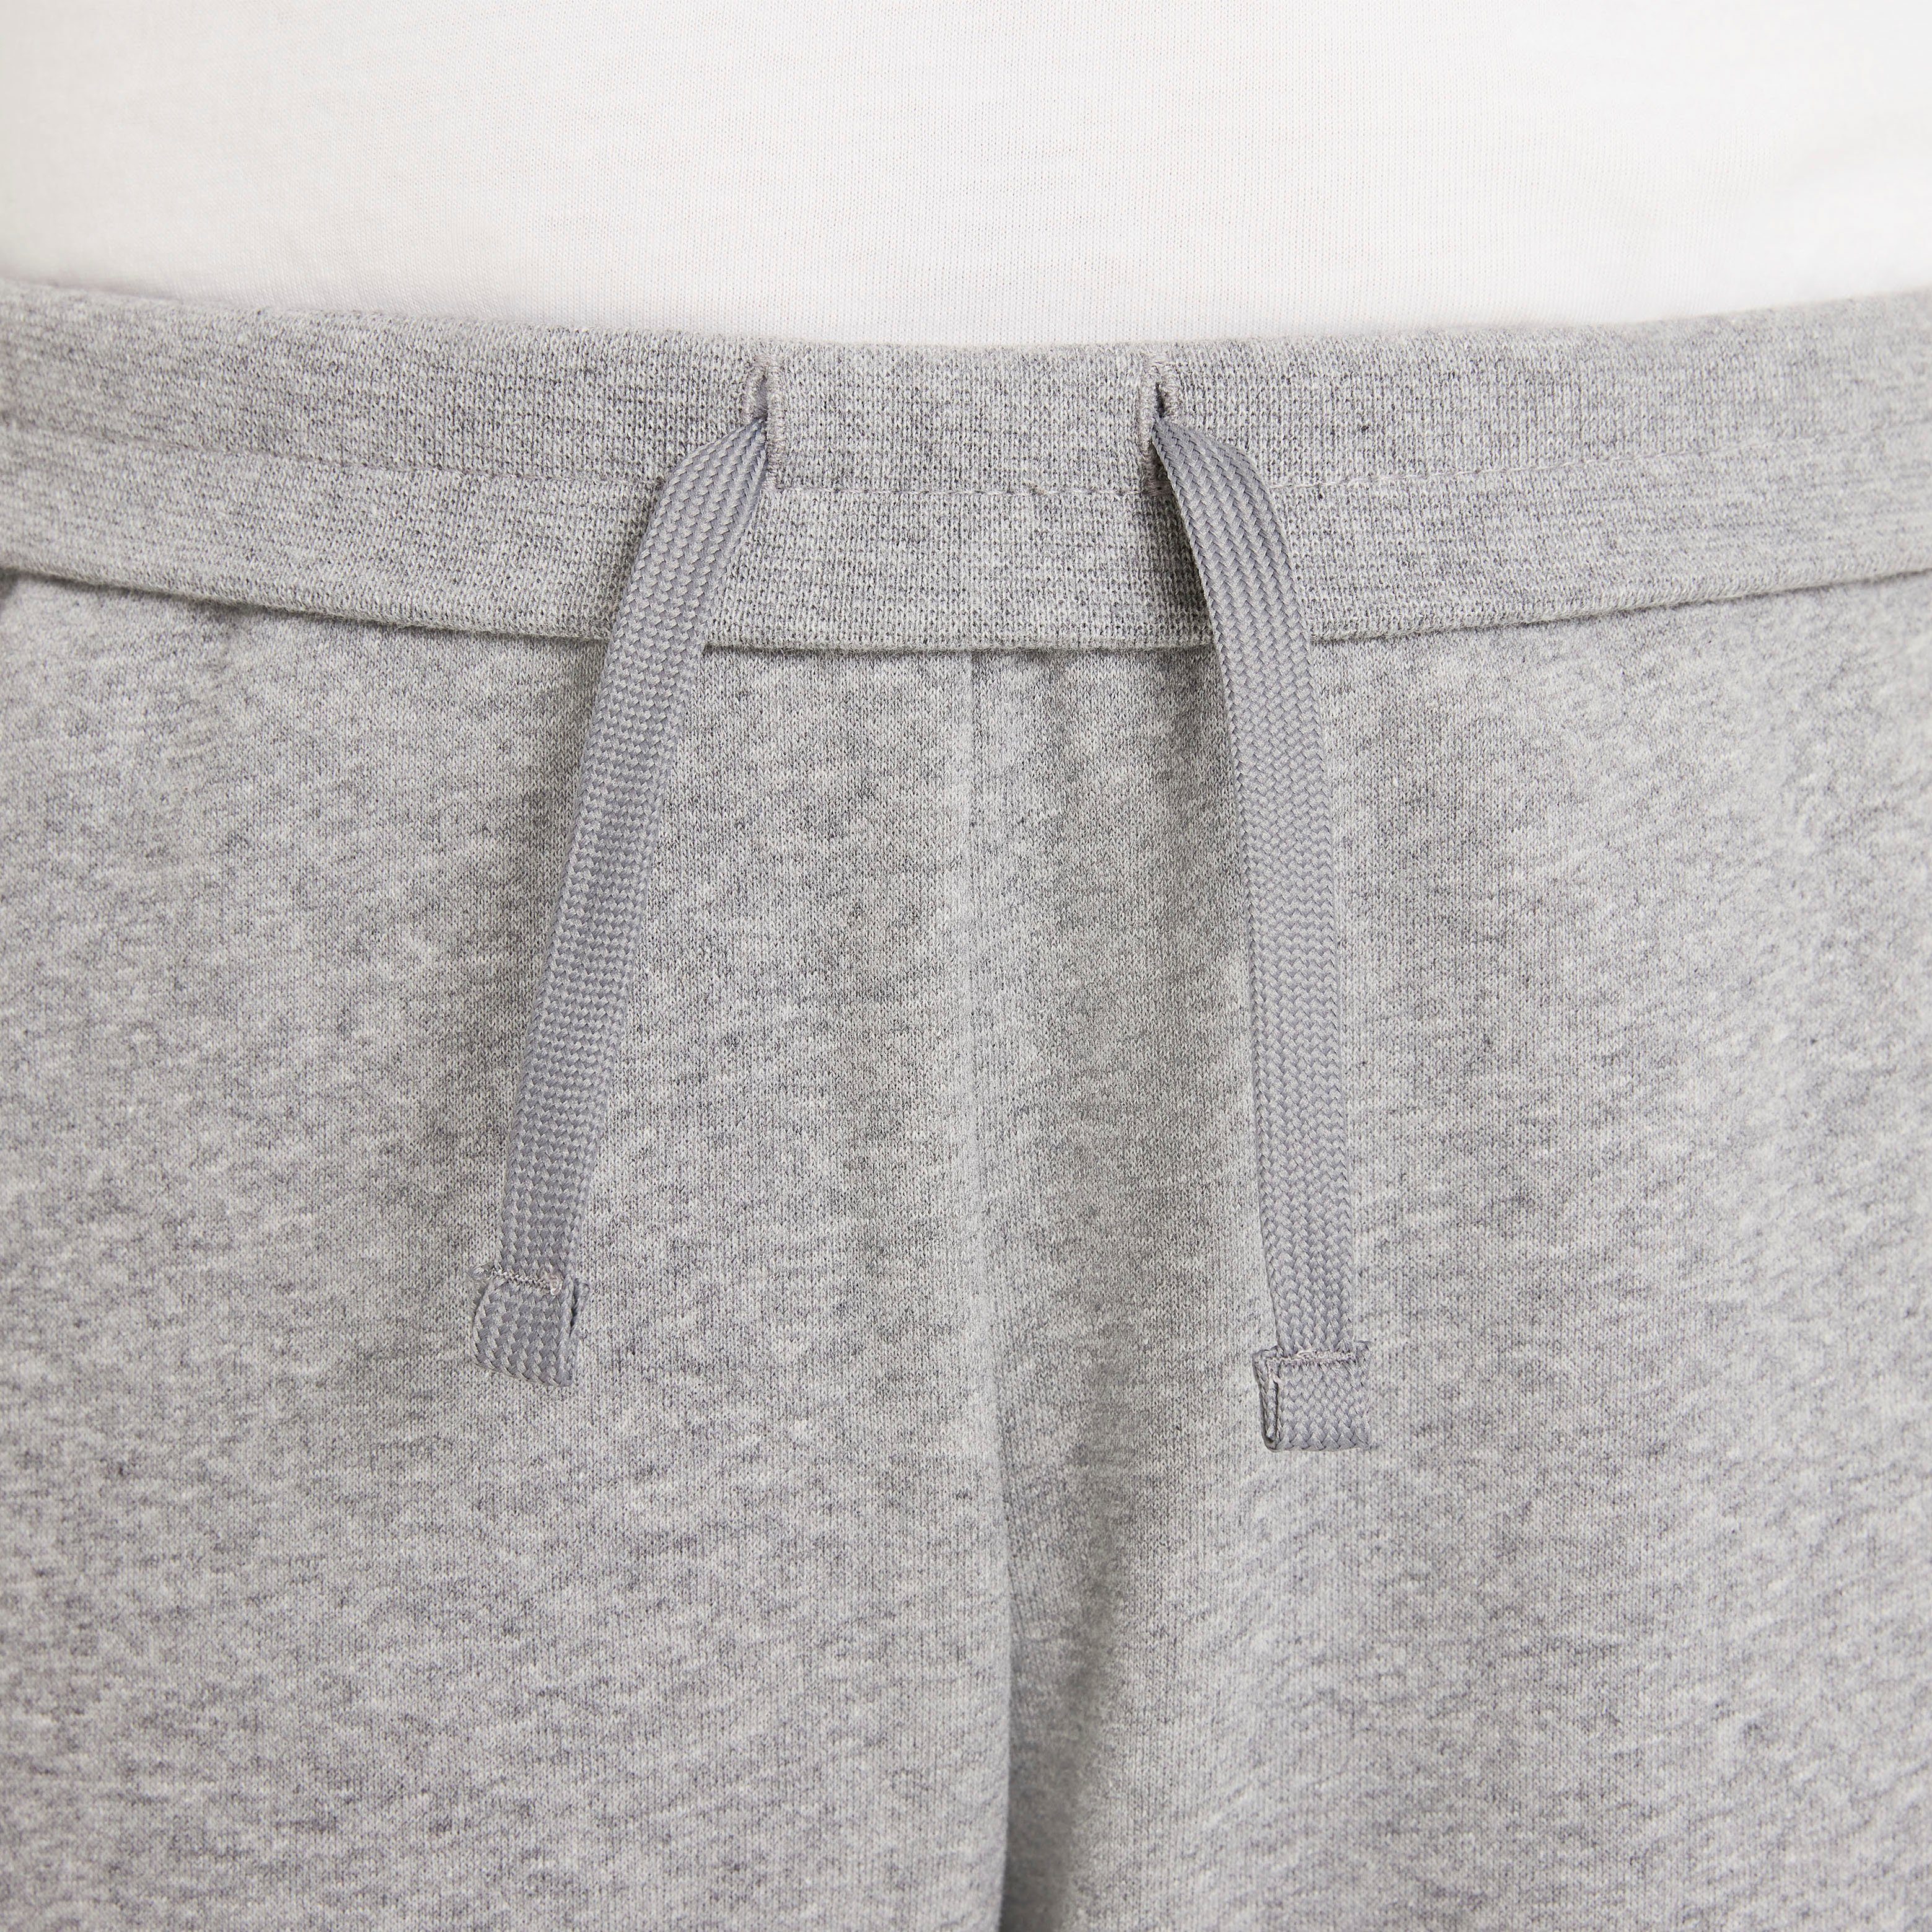 (Girls) Club Kids' Nike grau-meliert Pants Fleece Sportswear Jogginghose Big